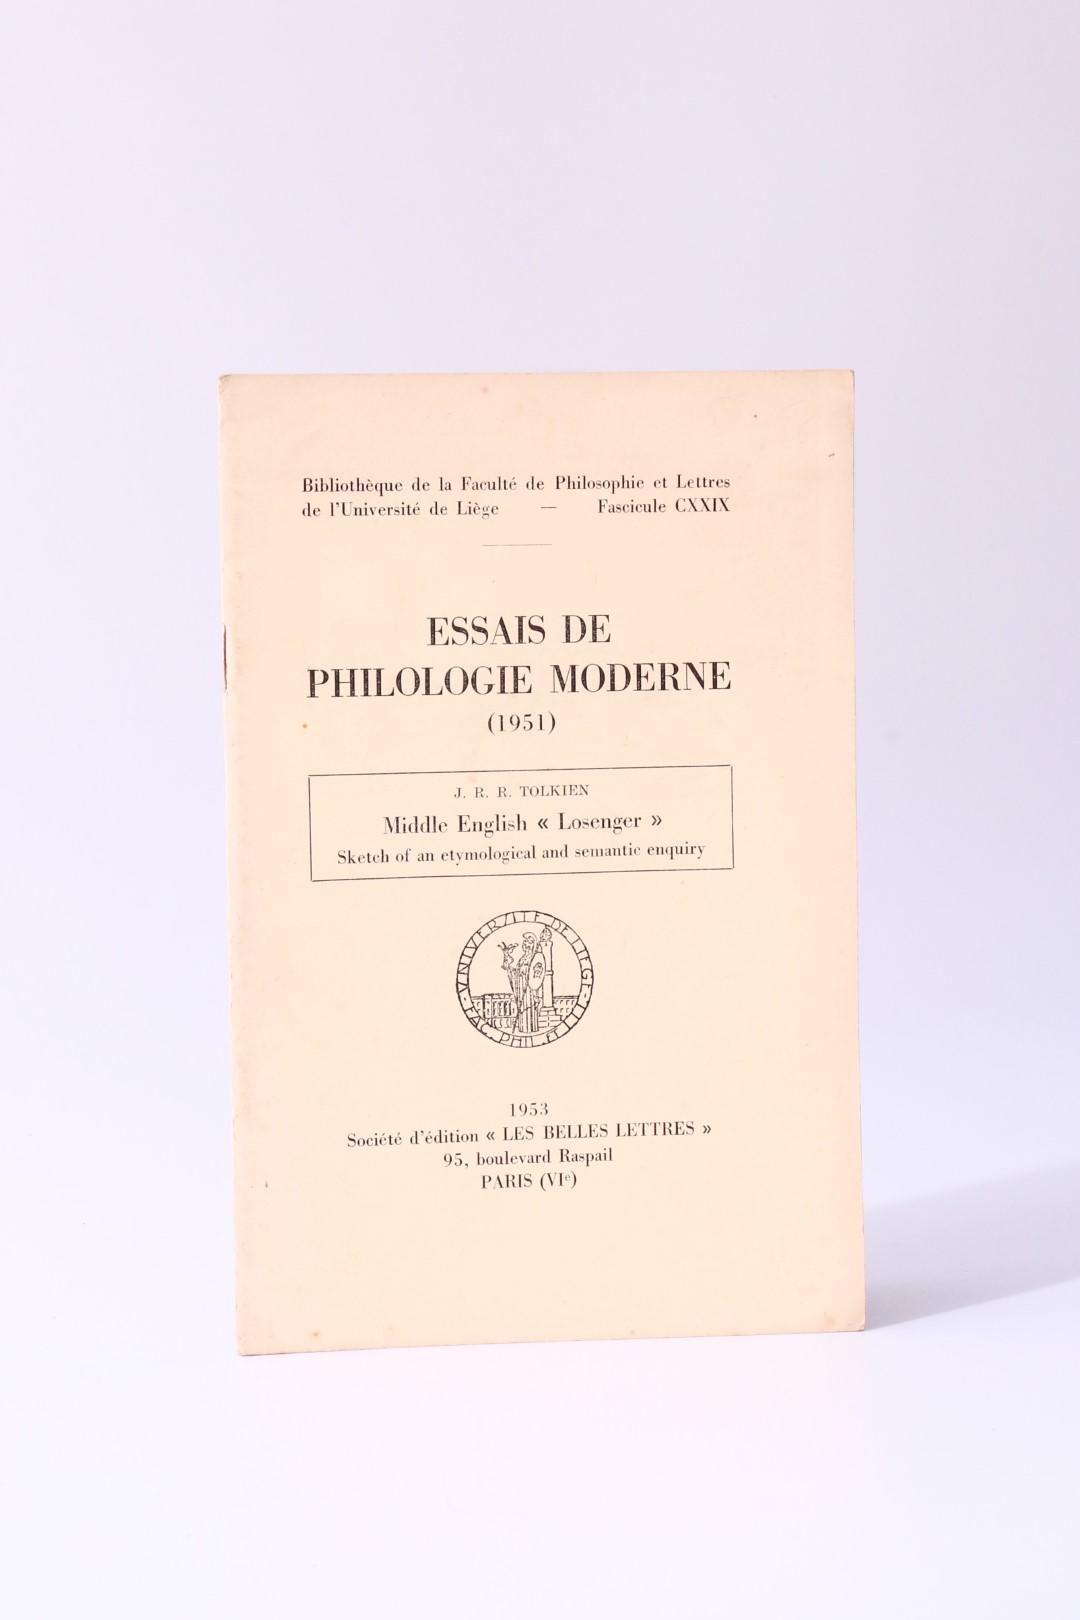 J.R.R. Tolkien - Middle English - Losenger in Essais De Philologie Moderne - Les Belles Lettres, University of Liege, 1953, First Edition.